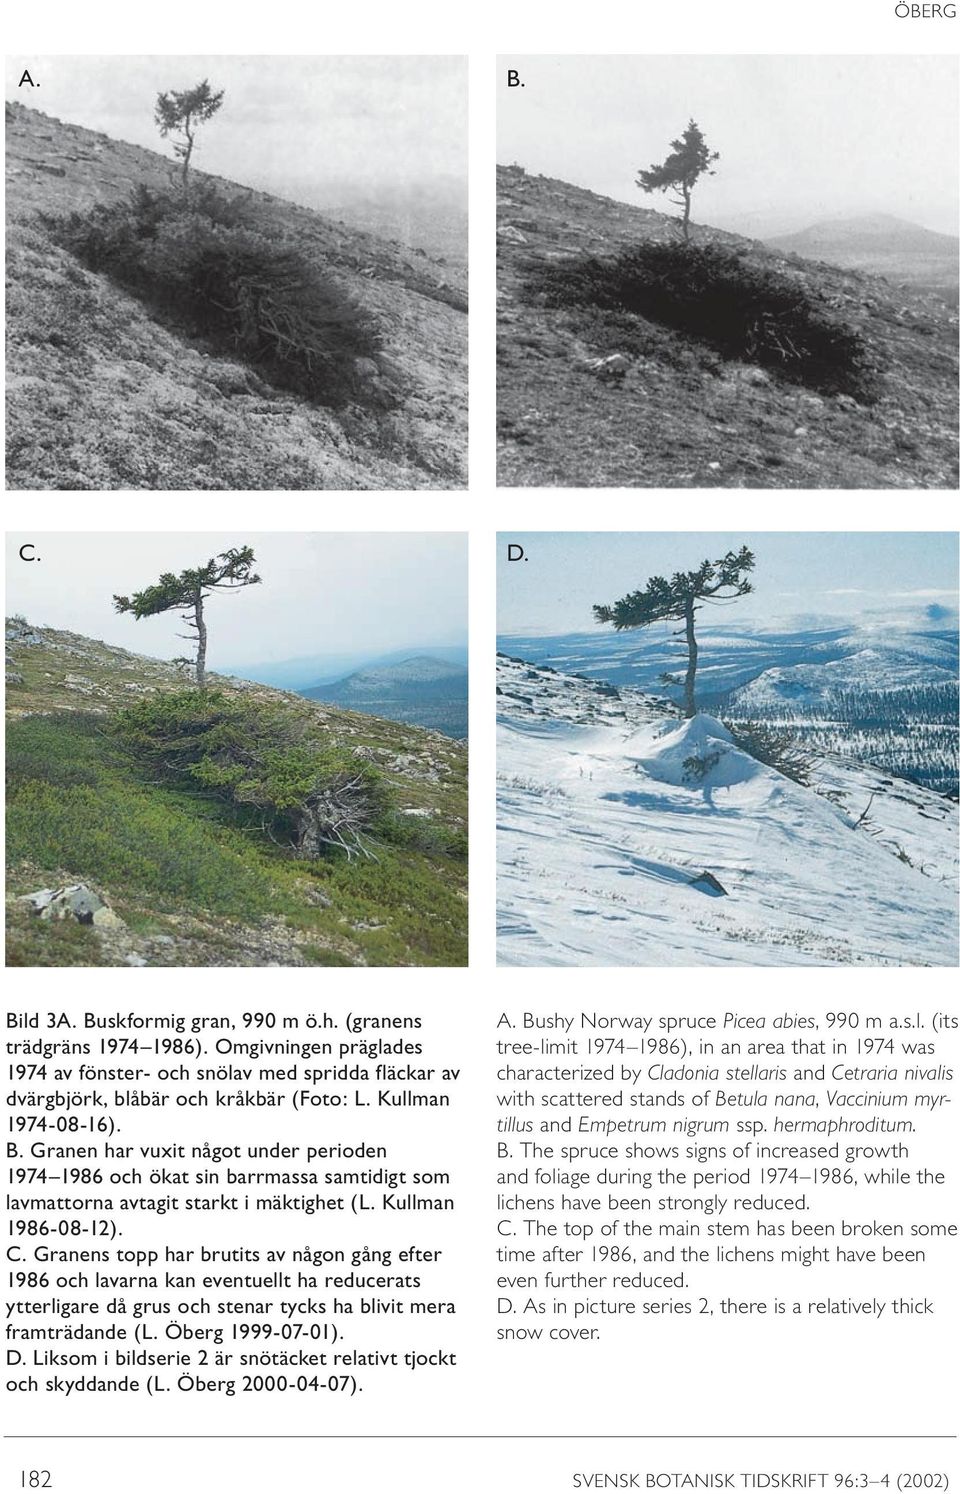 Granens topp har brutits av någon gång efter 1986 och lavarna kan eventuellt ha reducerats ytterligare då grus och stenar tycks ha blivit mera framträdande (L. Öberg 1999-07-01). D.